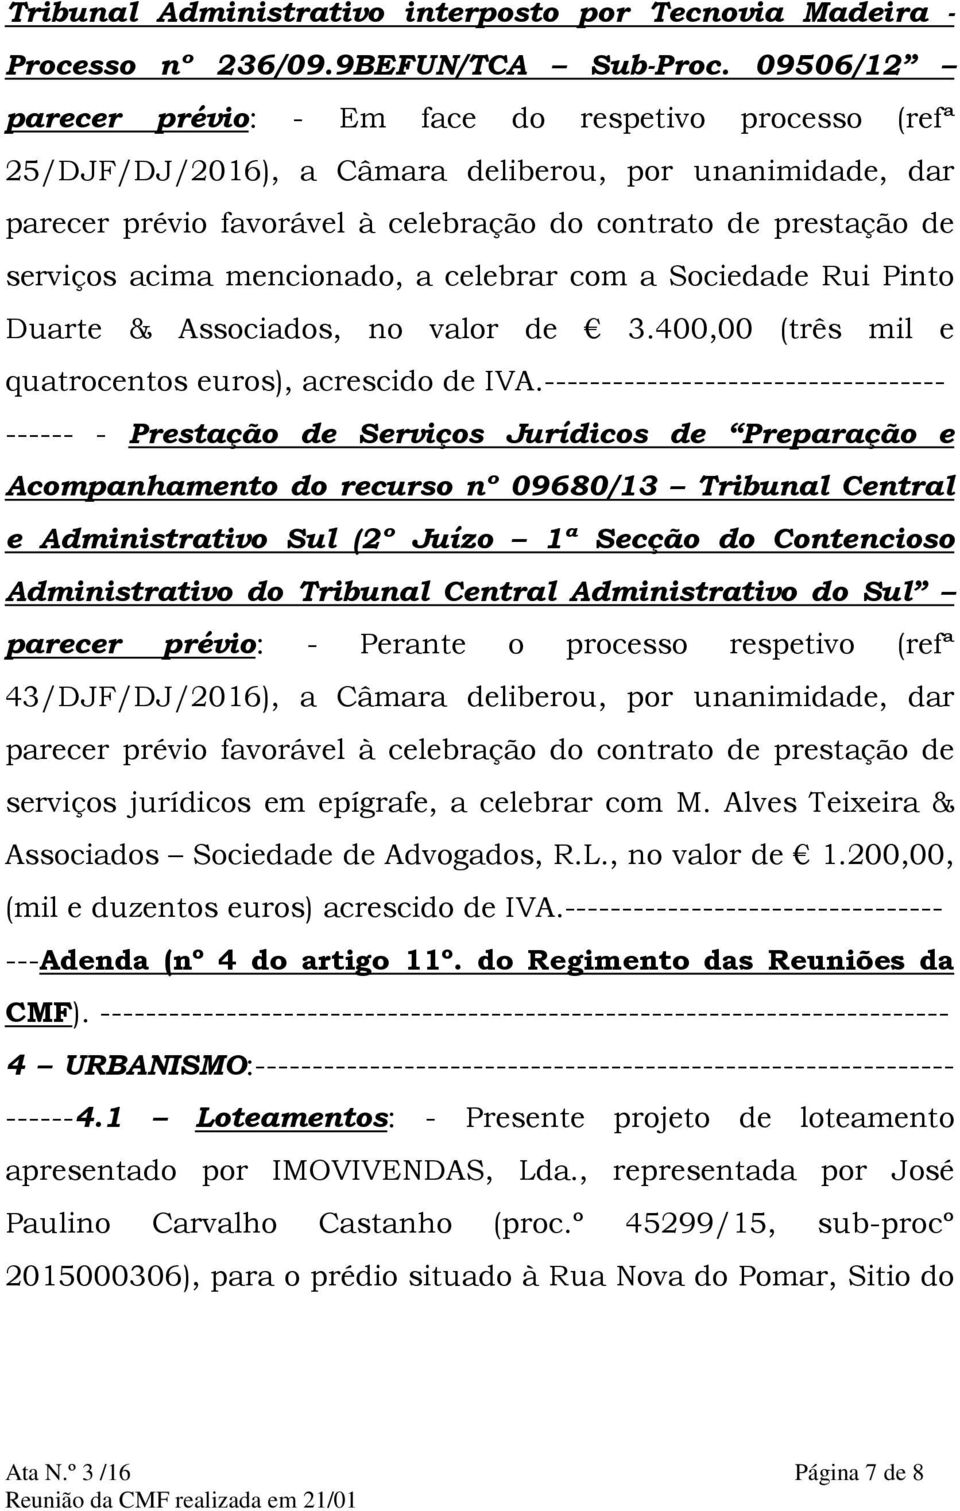 acima mencionado, a celebrar com a Sociedade Rui Pinto Duarte & Associados, no valor de 3.400,00 (três mil e quatrocentos euros), acrescido de IVA.